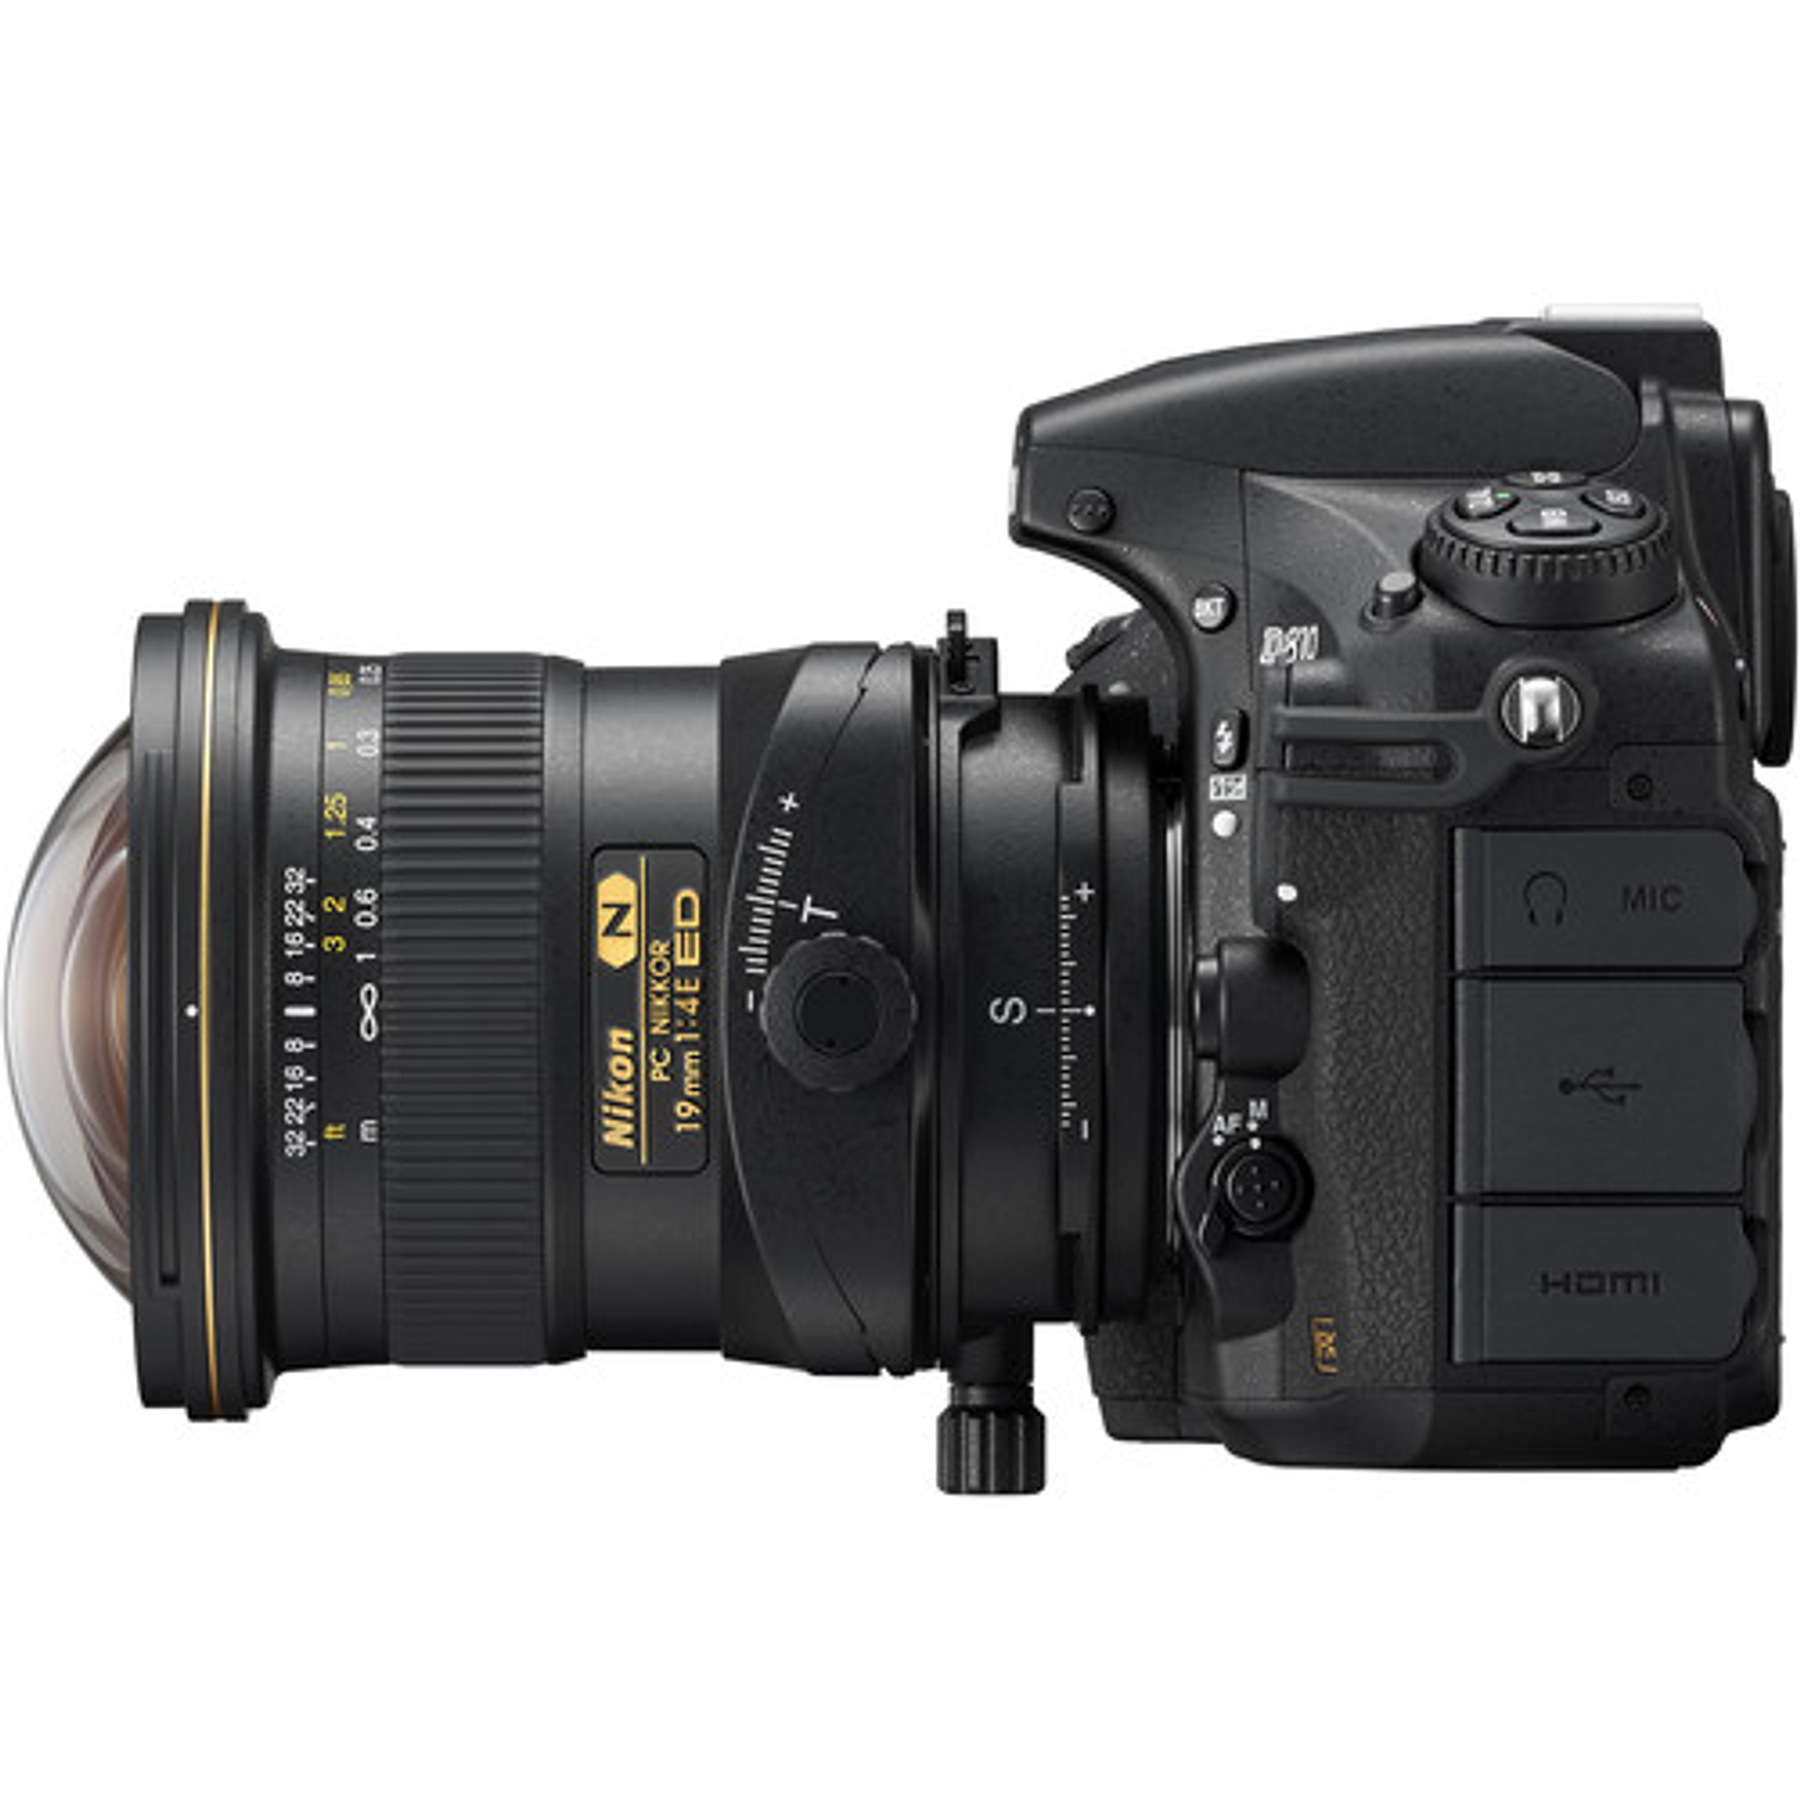 Nikon F PC-E 19mm f4E ED Tilt-Shift